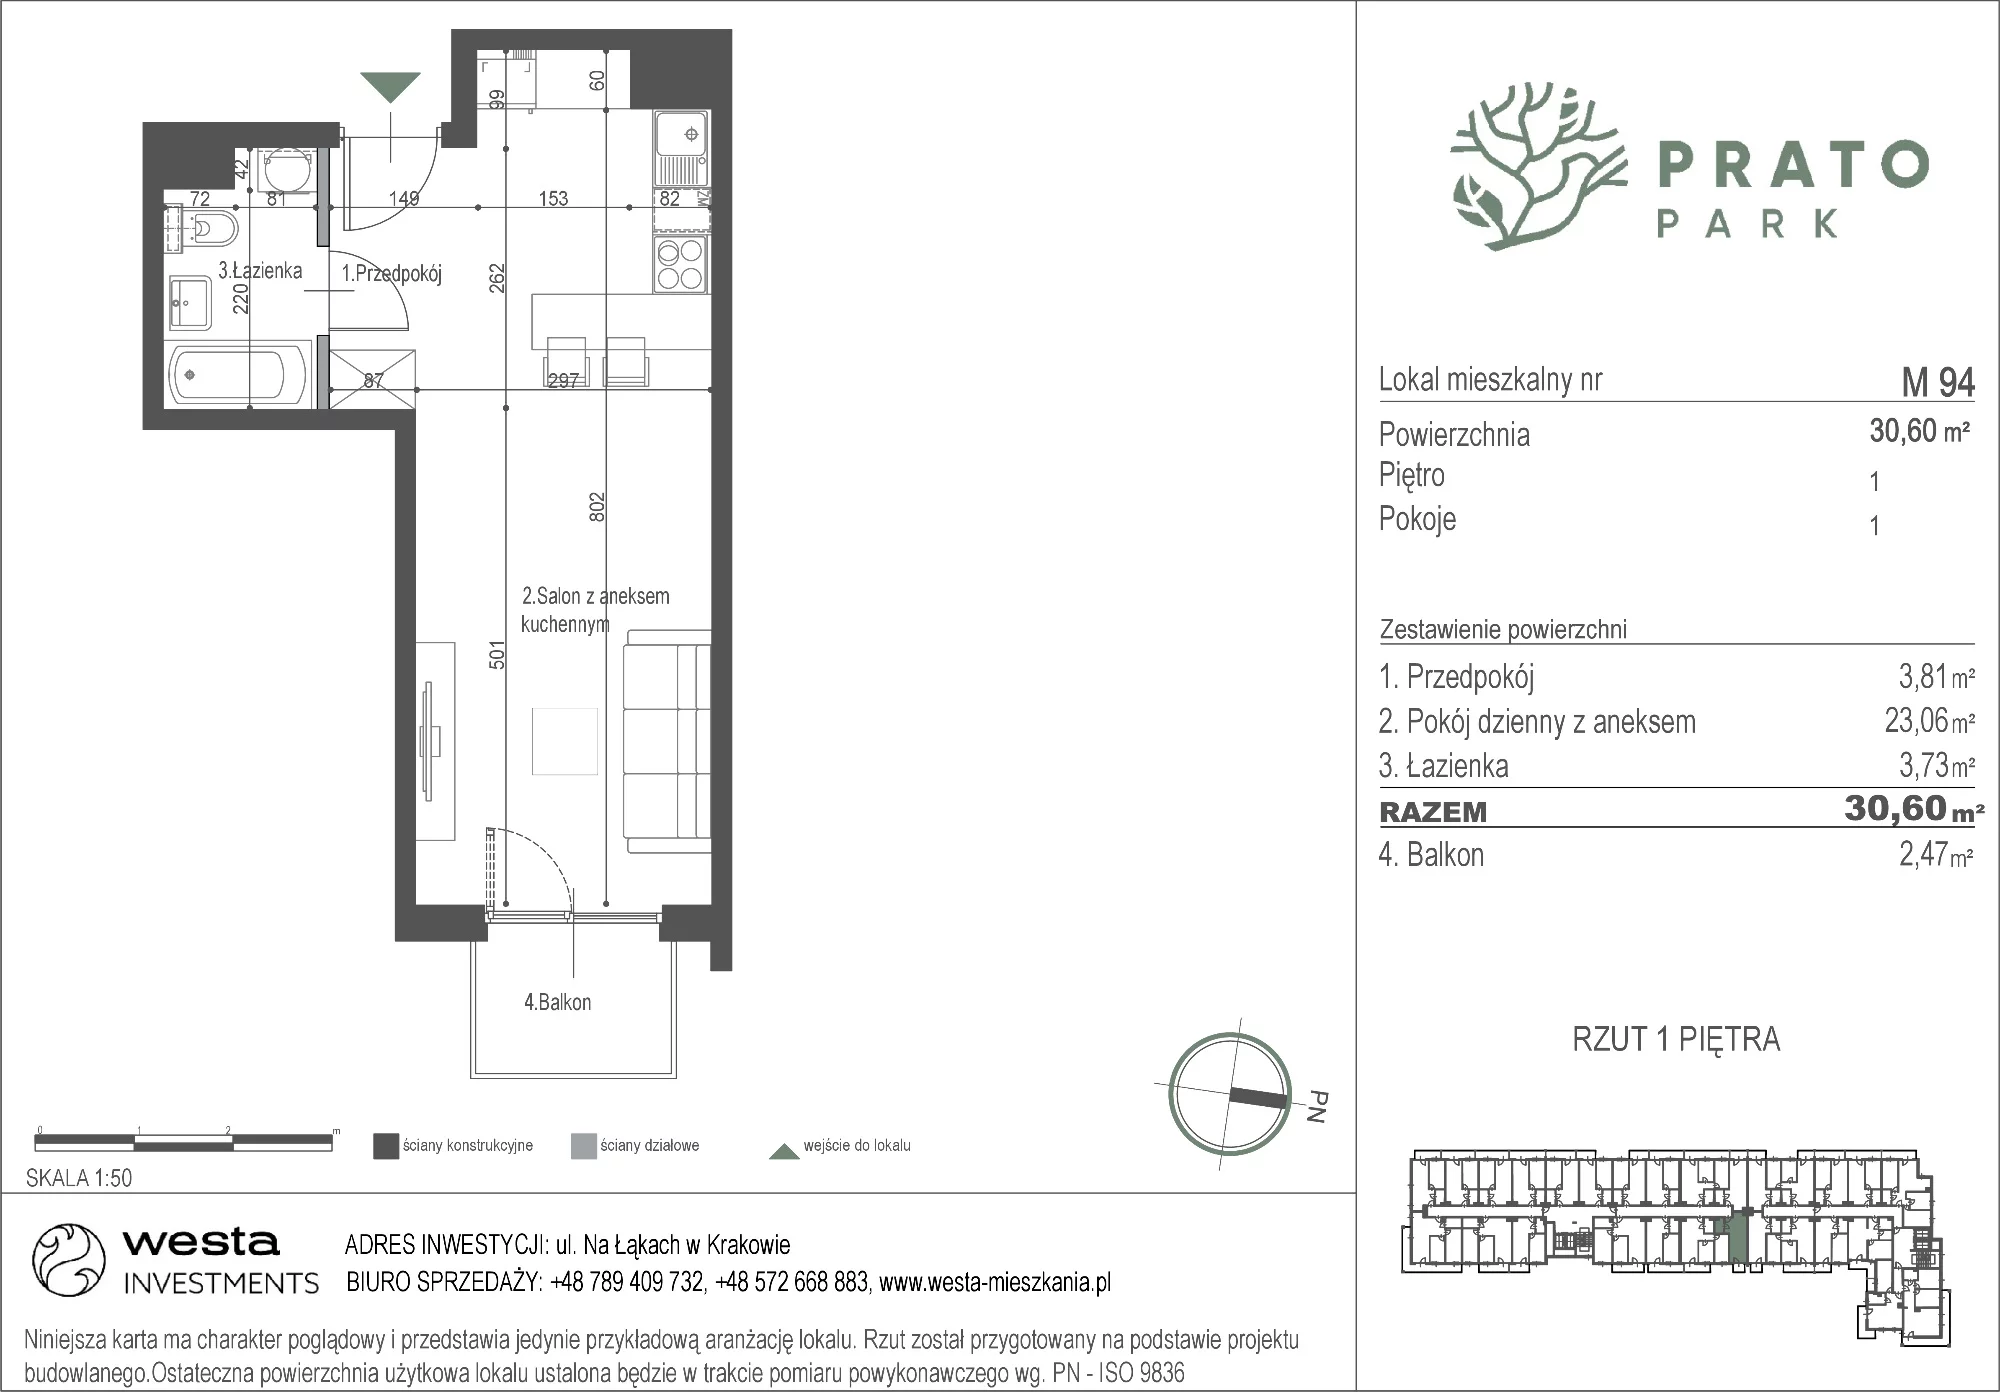 Mieszkanie 30,60 m², piętro 1, oferta nr M94, Prato Park, Kraków, Czyżyny, ul. Na Łąkach